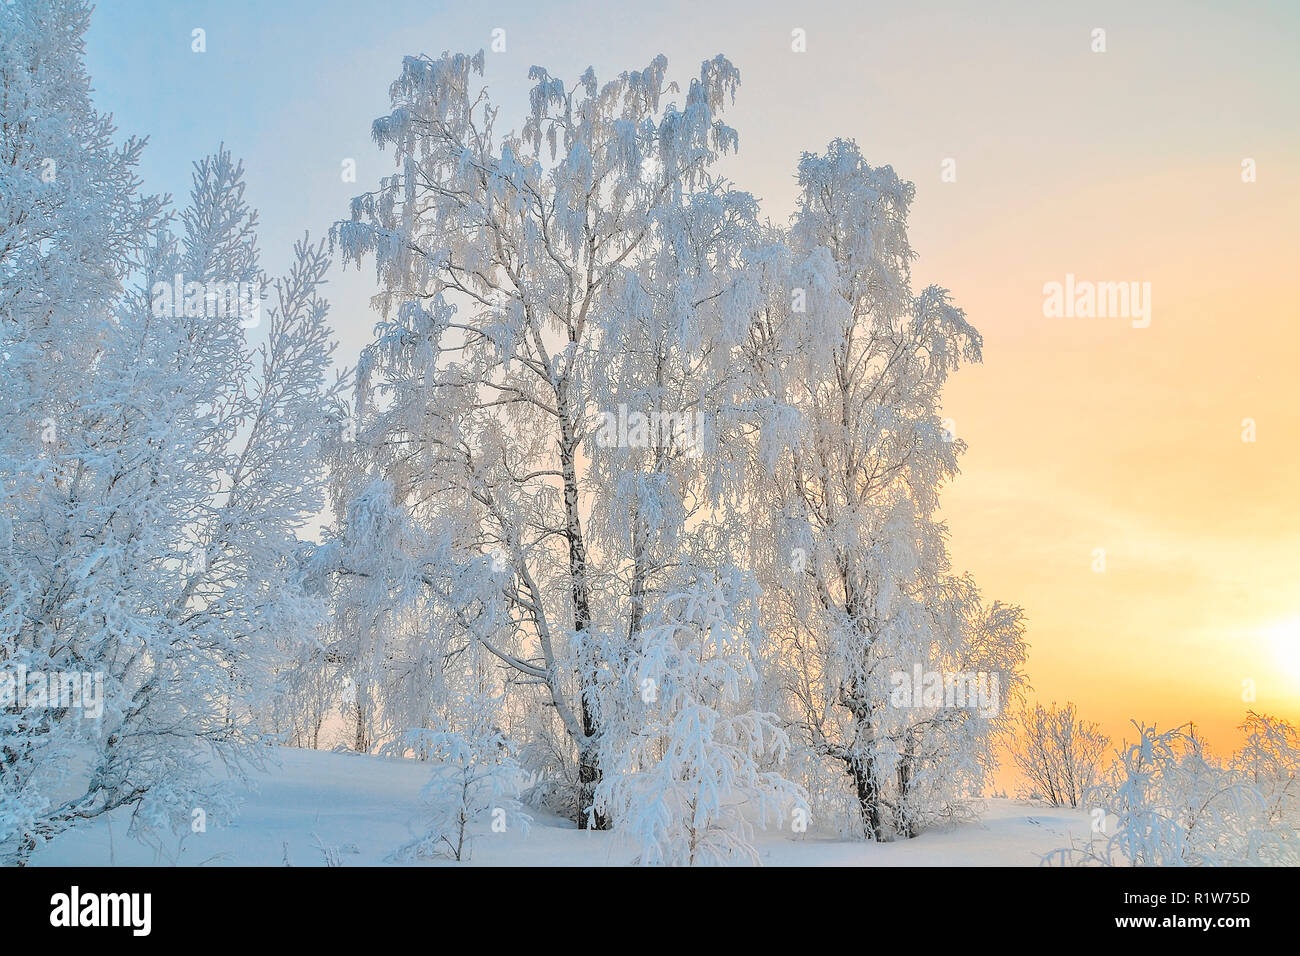 Winterlandschaft - Birken mit Raureif an Sonnenstrahlen der untergehenden Sonne - Märchen von der frostigen Winter Natur abgedeckt Stockfoto